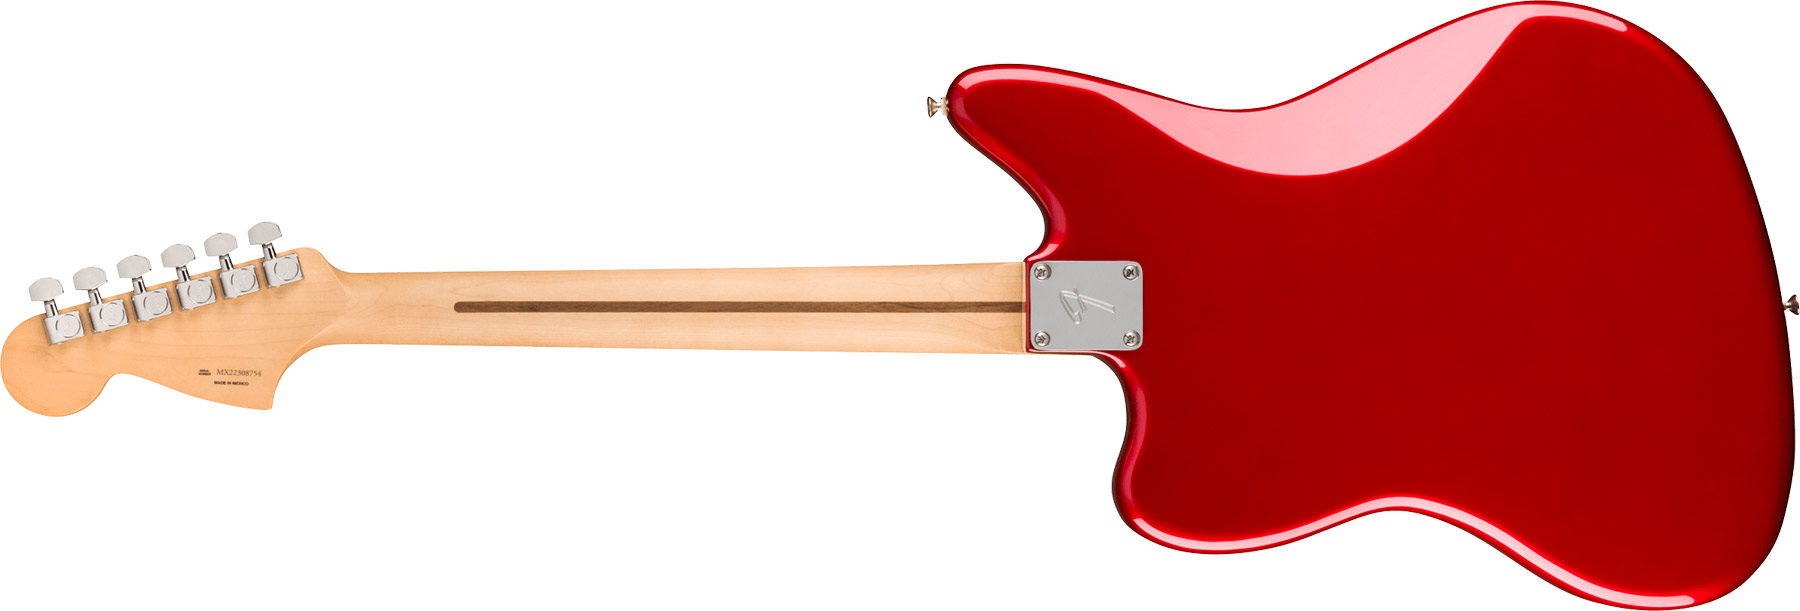 Fender Jaguar Player Mex 2023 Hs Trem Pf - Candy Apple Red - Guitare Électrique RÉtro Rock - Variation 1